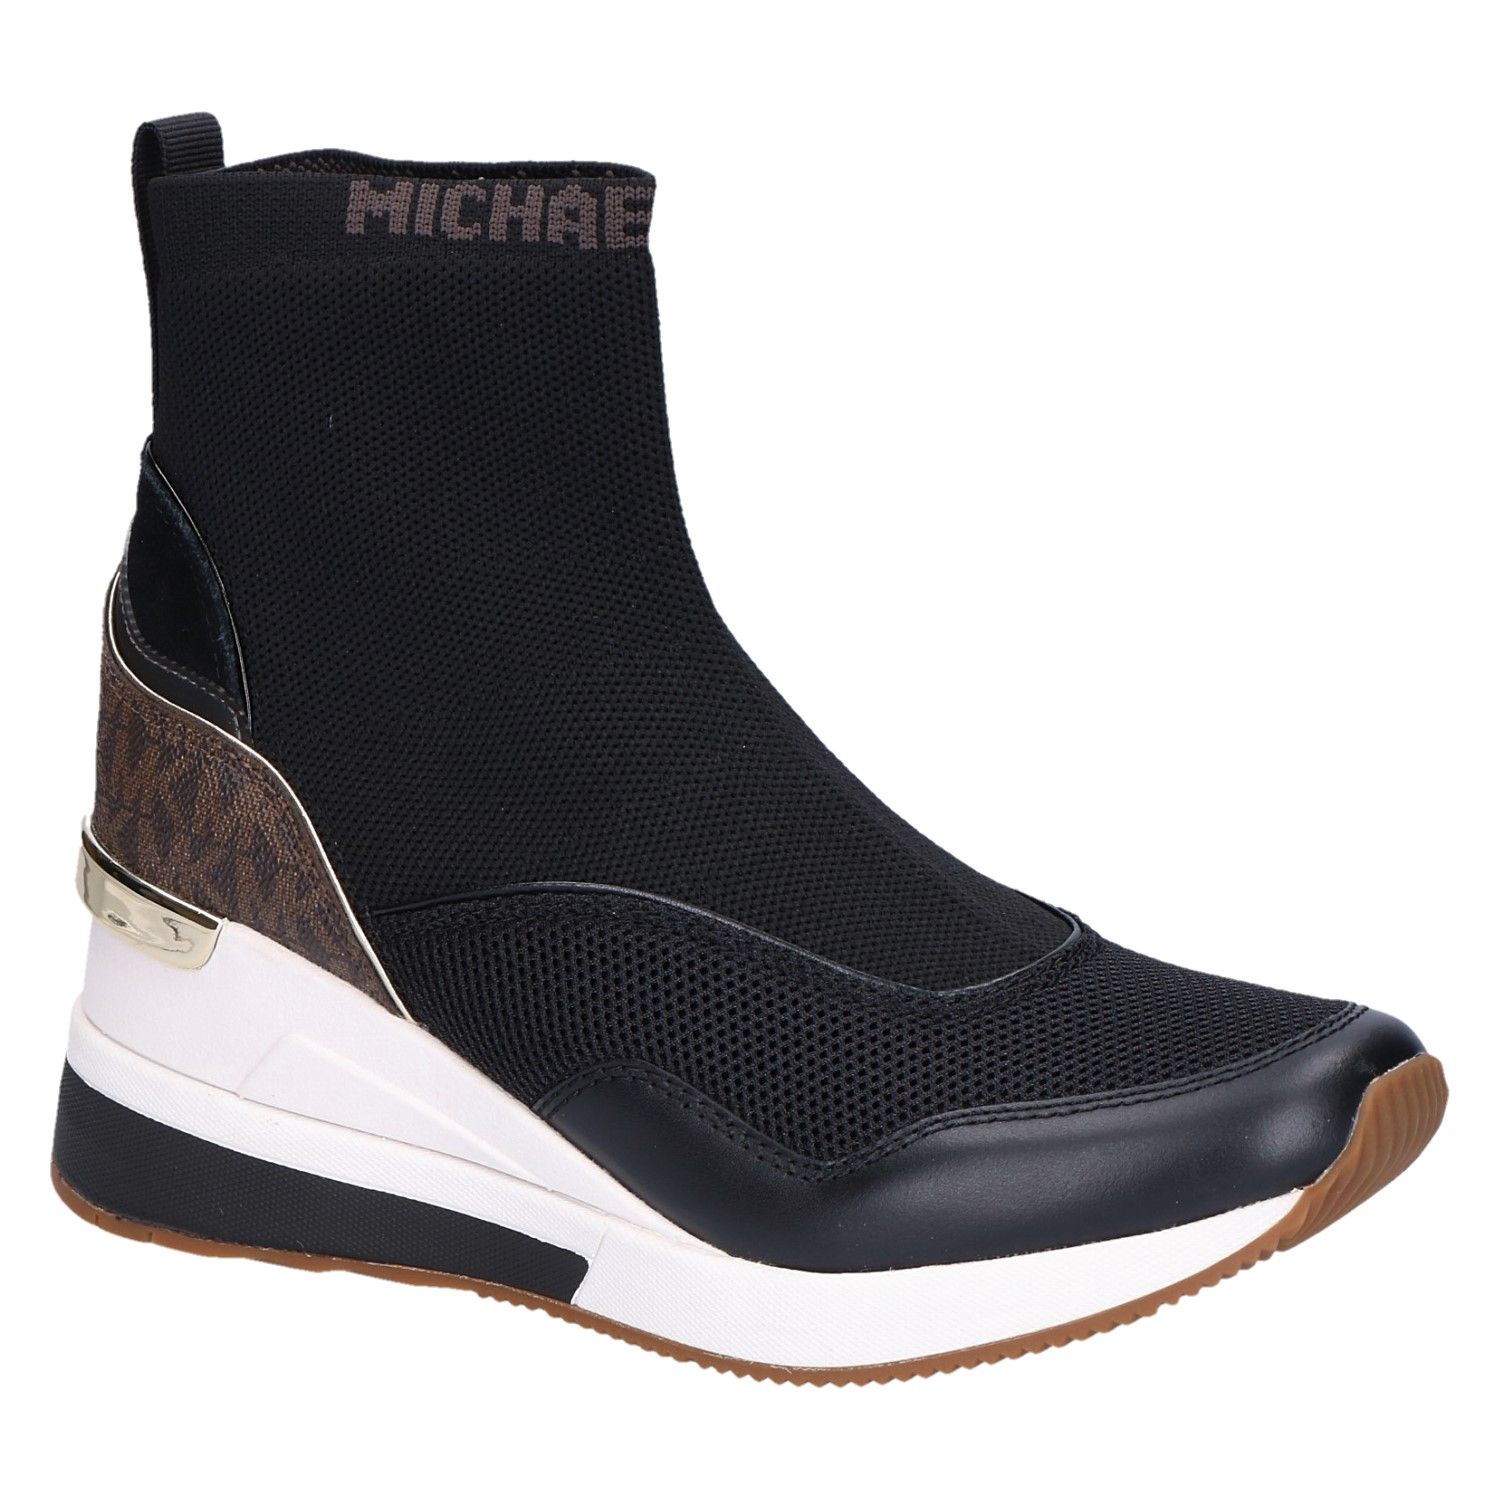 Sluimeren idioom meest Michael Kors Swift Boot sleehak zwart/bruin stretch met artikelnummer  SwiftBoot 43F1SWFE5D verkrijgbaar bij Beurskens schoenmode.